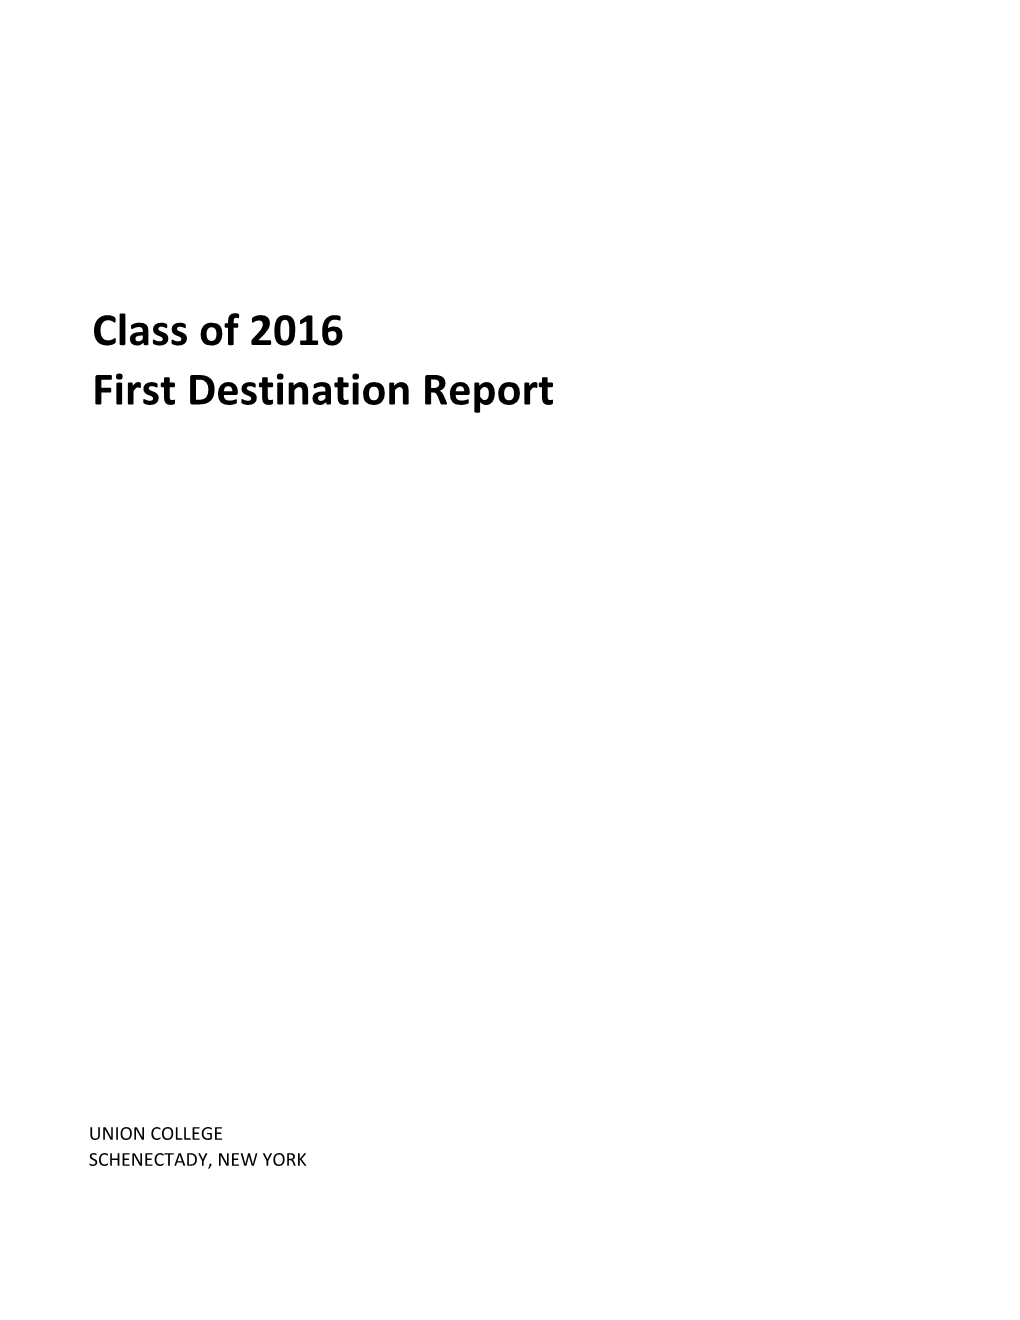 Class of 2016 First Destination Report